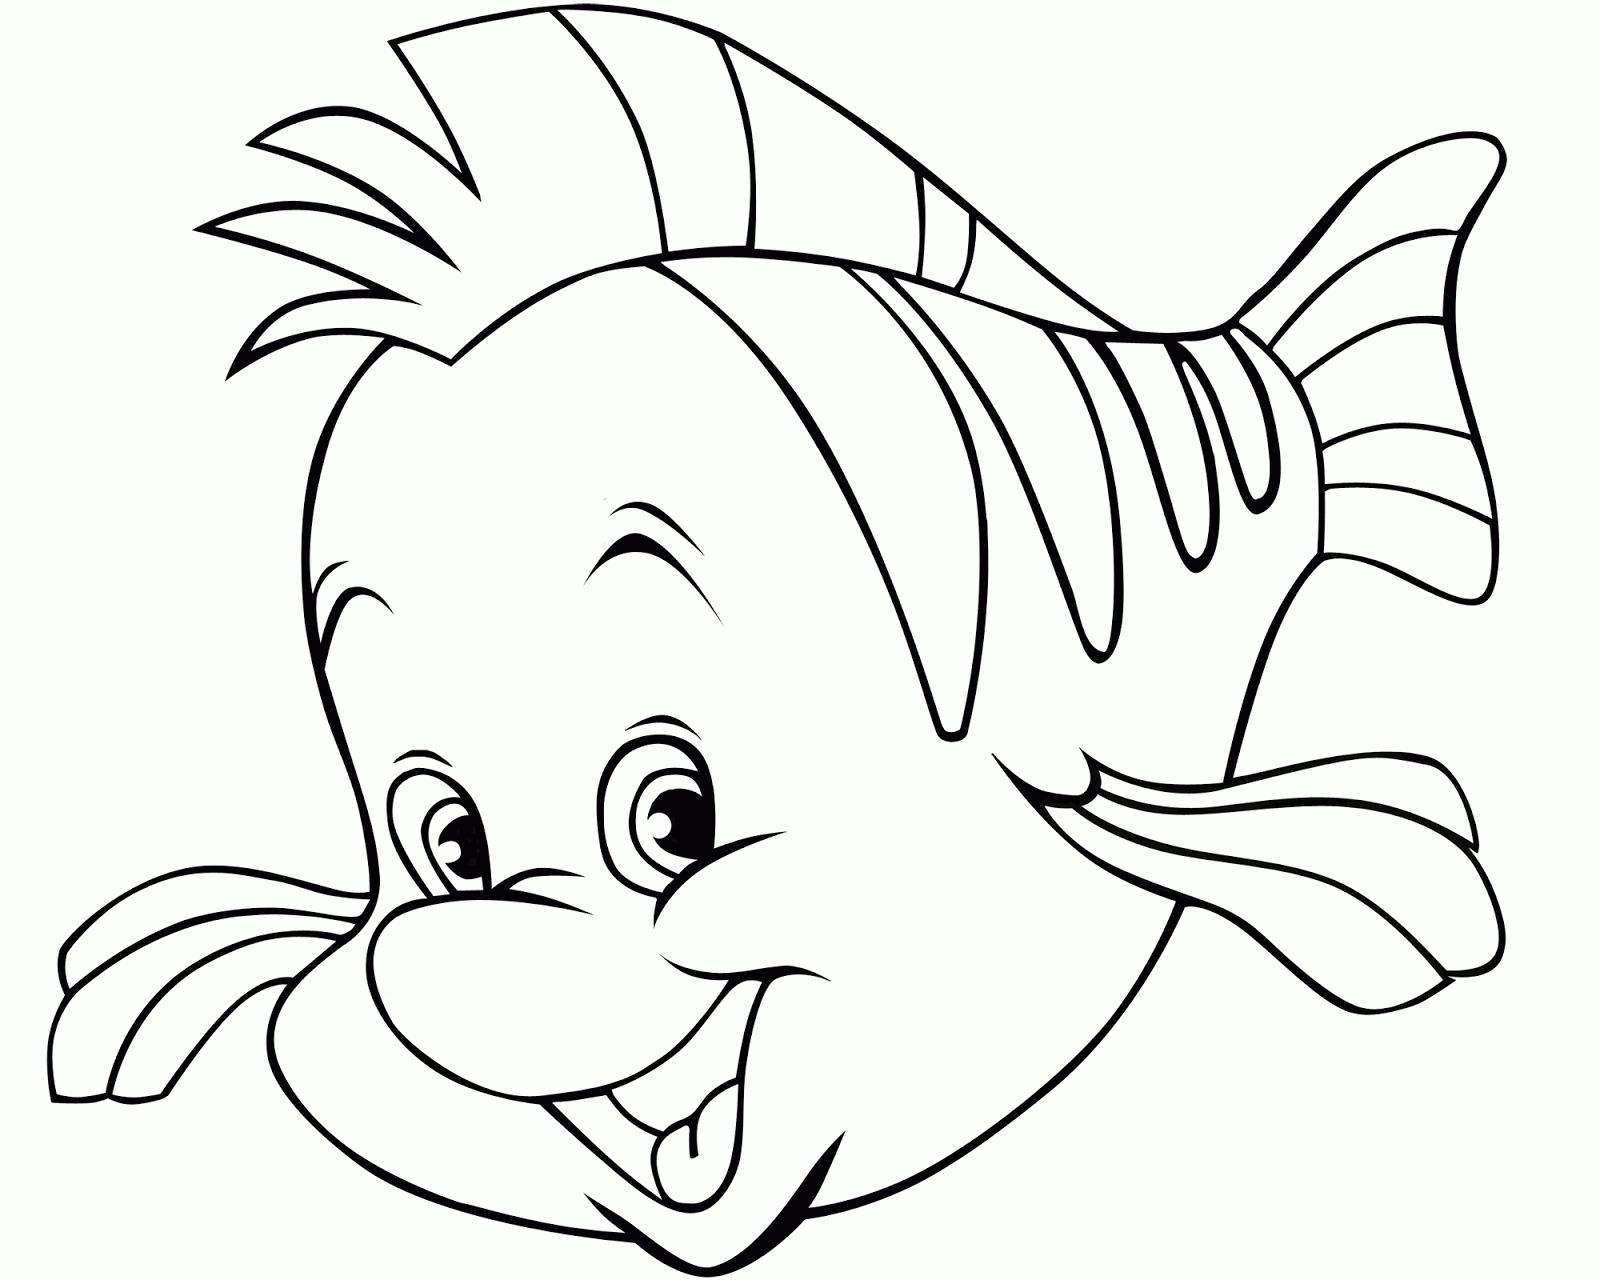  Раскраски детские подводный мир. Раскраски для детей с рыбами.  Скачать бесплатные раскраски рыбки. Раскраски для детей с рыбами. Раскраски для детей скачать бесплатно. Бесплатные детские раскраски. Раскраски детские подводный мир. 